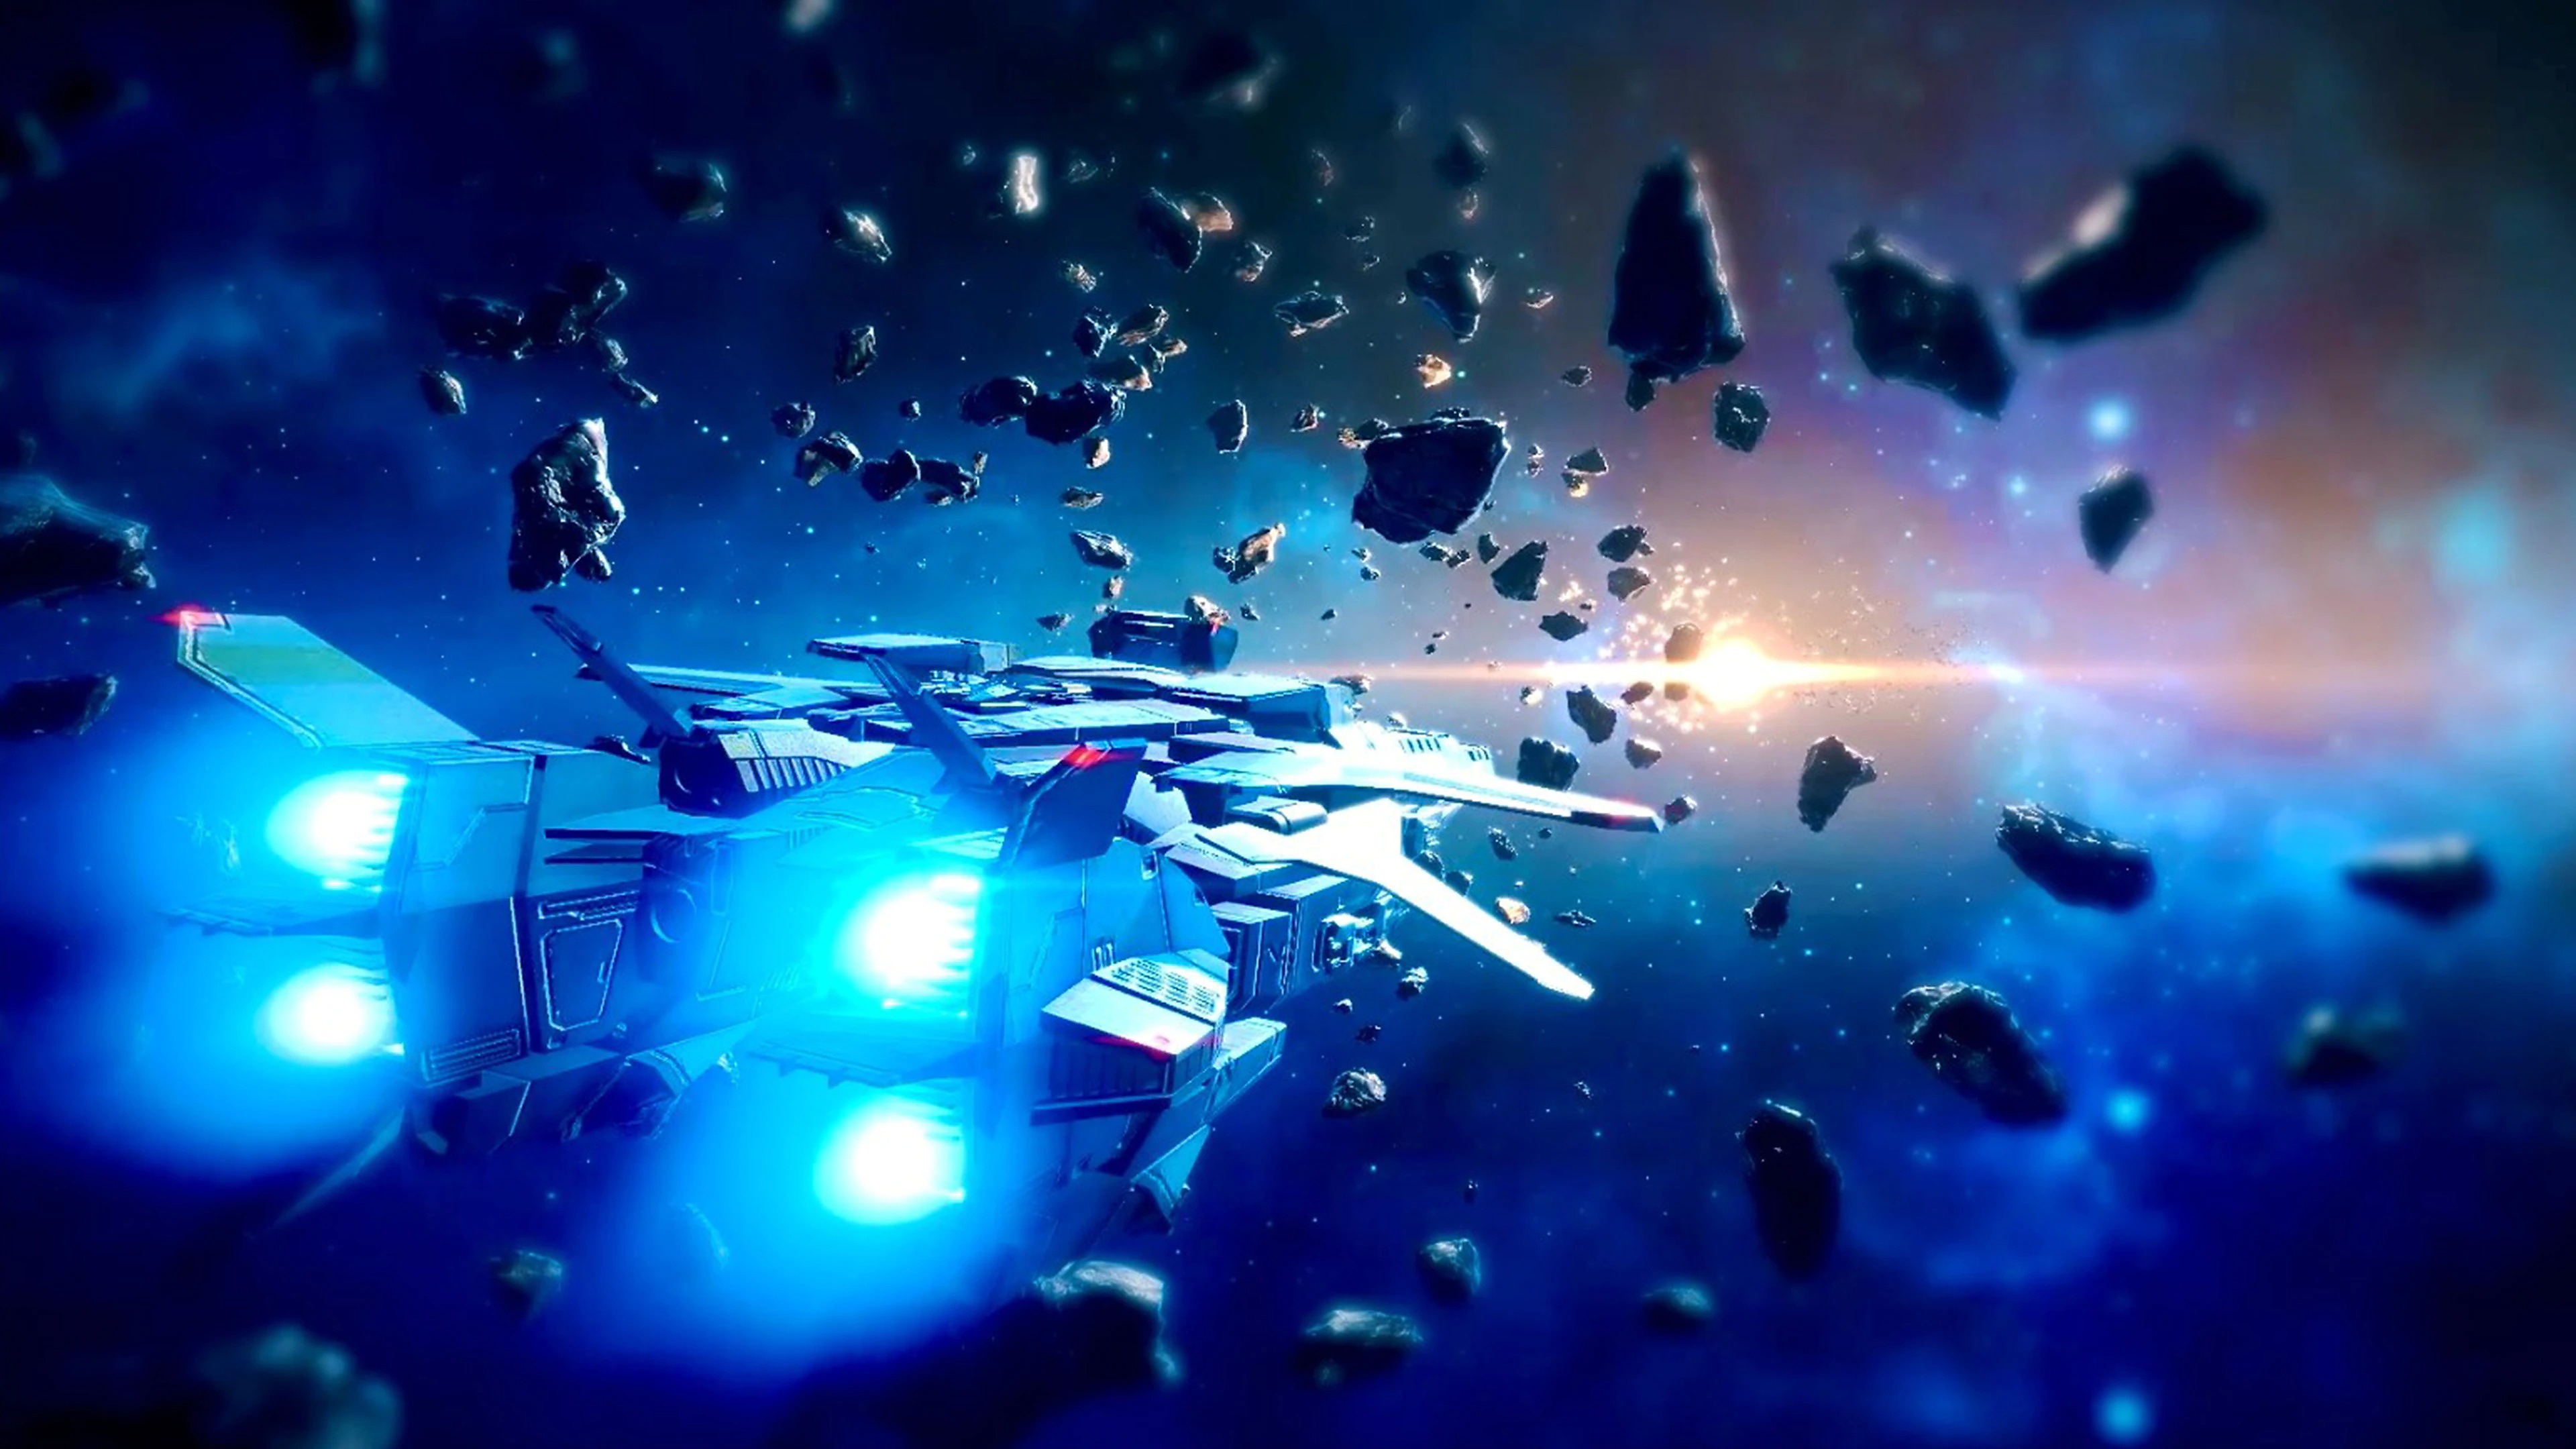 《传继者》截屏展示飞船在太空岩石之间飞行